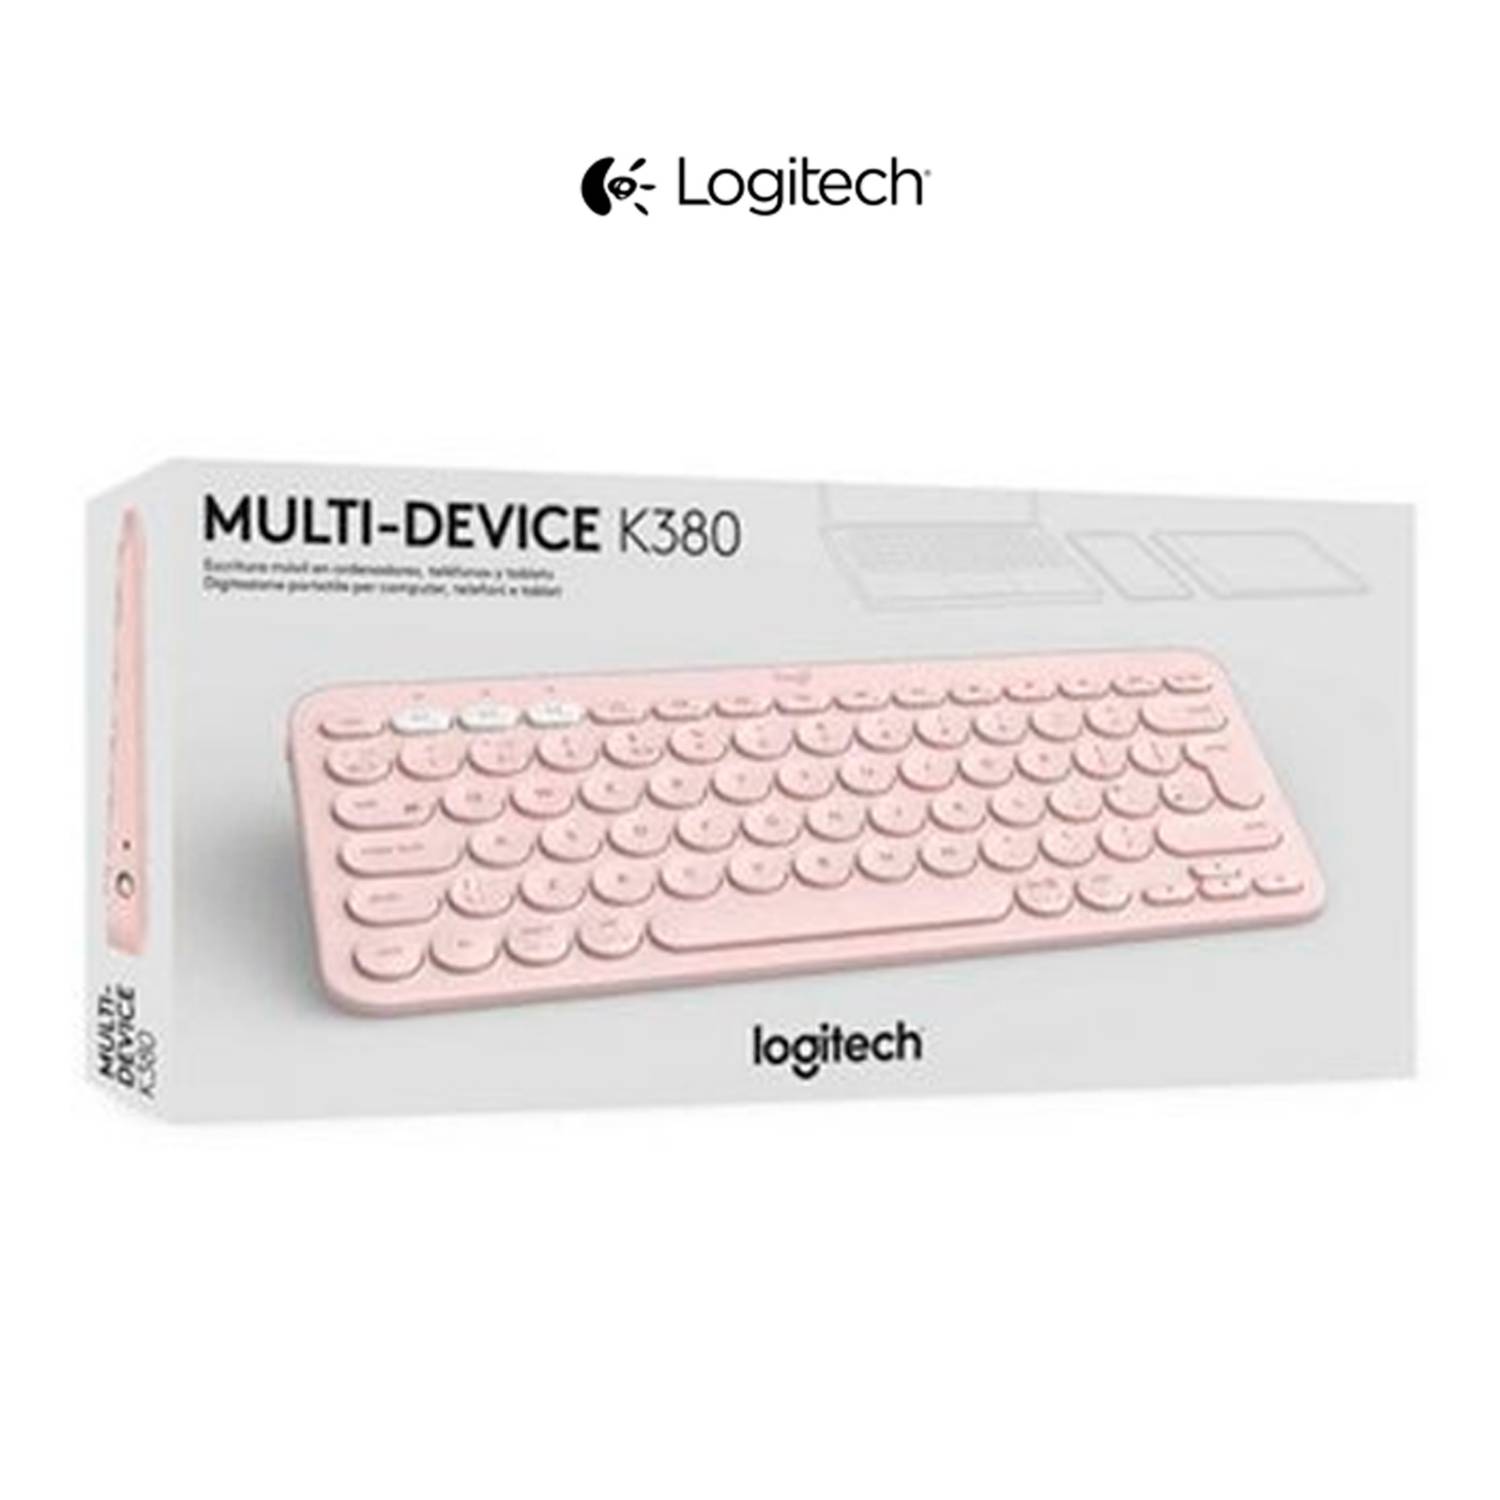 Comprá Teclado Inalámbrico Logitech K380 Bluetooth 920-009595 - Blanco ( Español) - Envios a todo el Paraguay